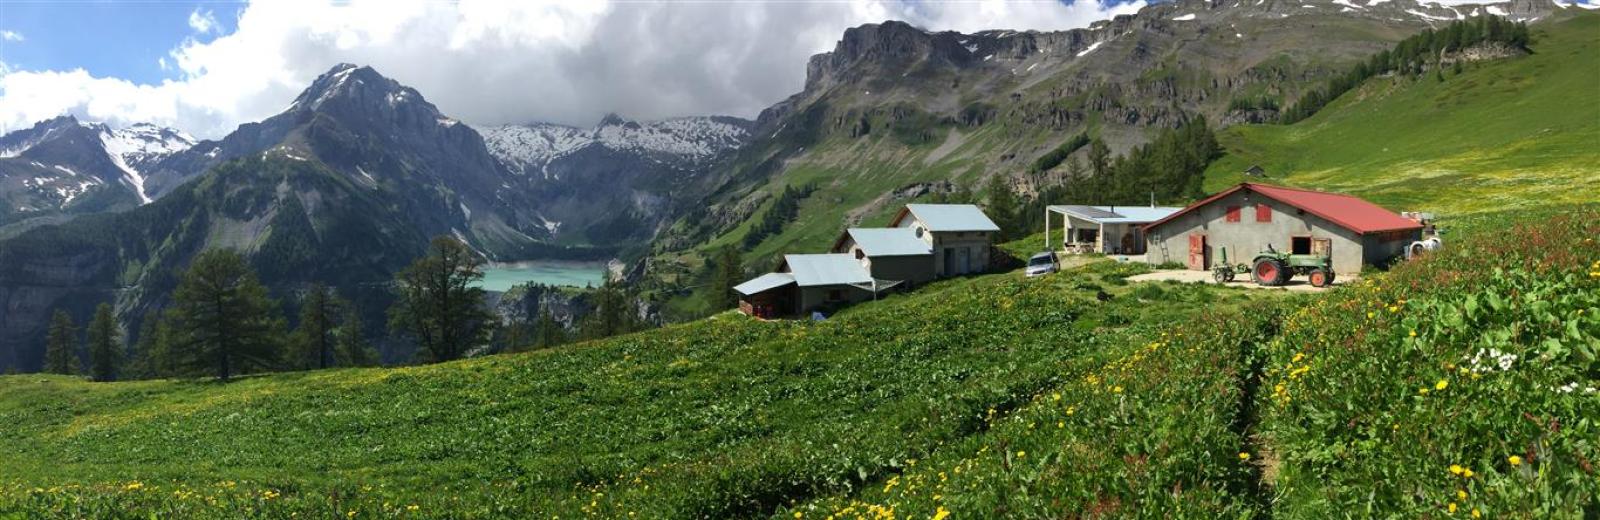 El ‘alpage’ de la familia Muldry se encuentra sobre la Represa de Rawyl y el Lago Zeuzier cerca de Anzère en el cantón de Valais